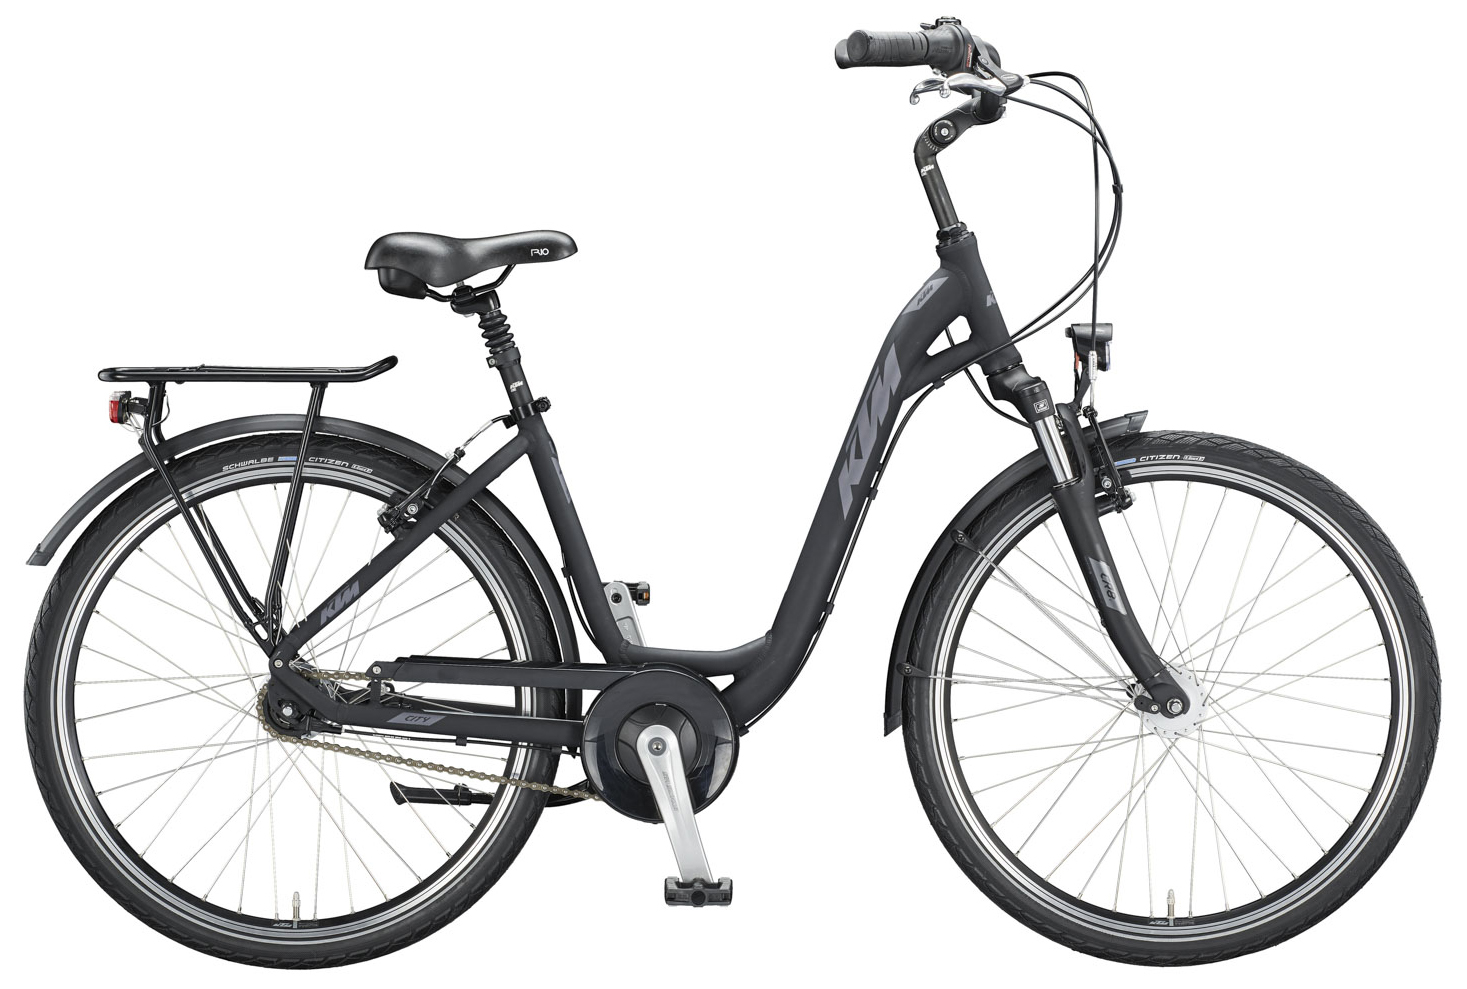  Отзывы о Женском велосипеде KTM City Line 26 2020